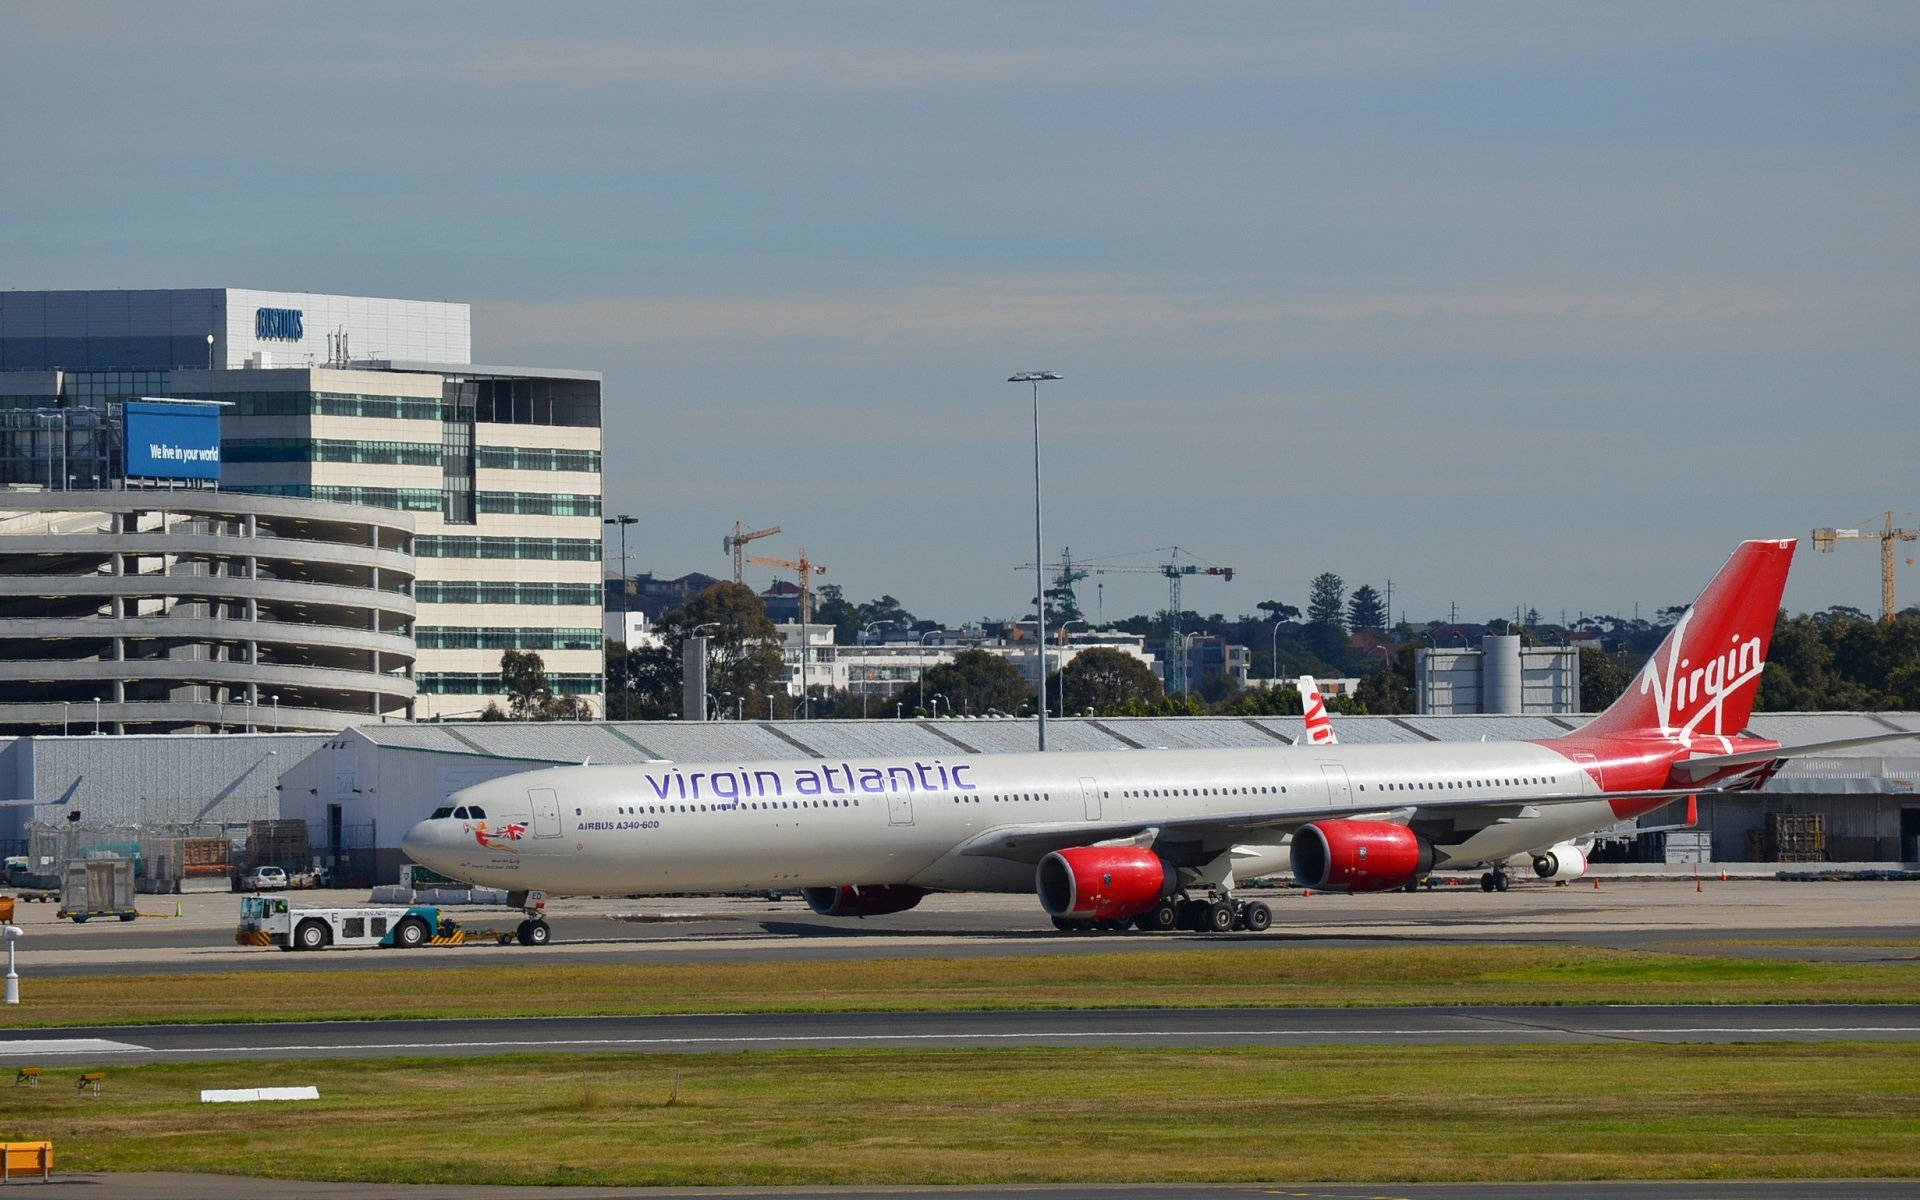 Virgin Atlantic Airplane Preparing To Board Wallpaper